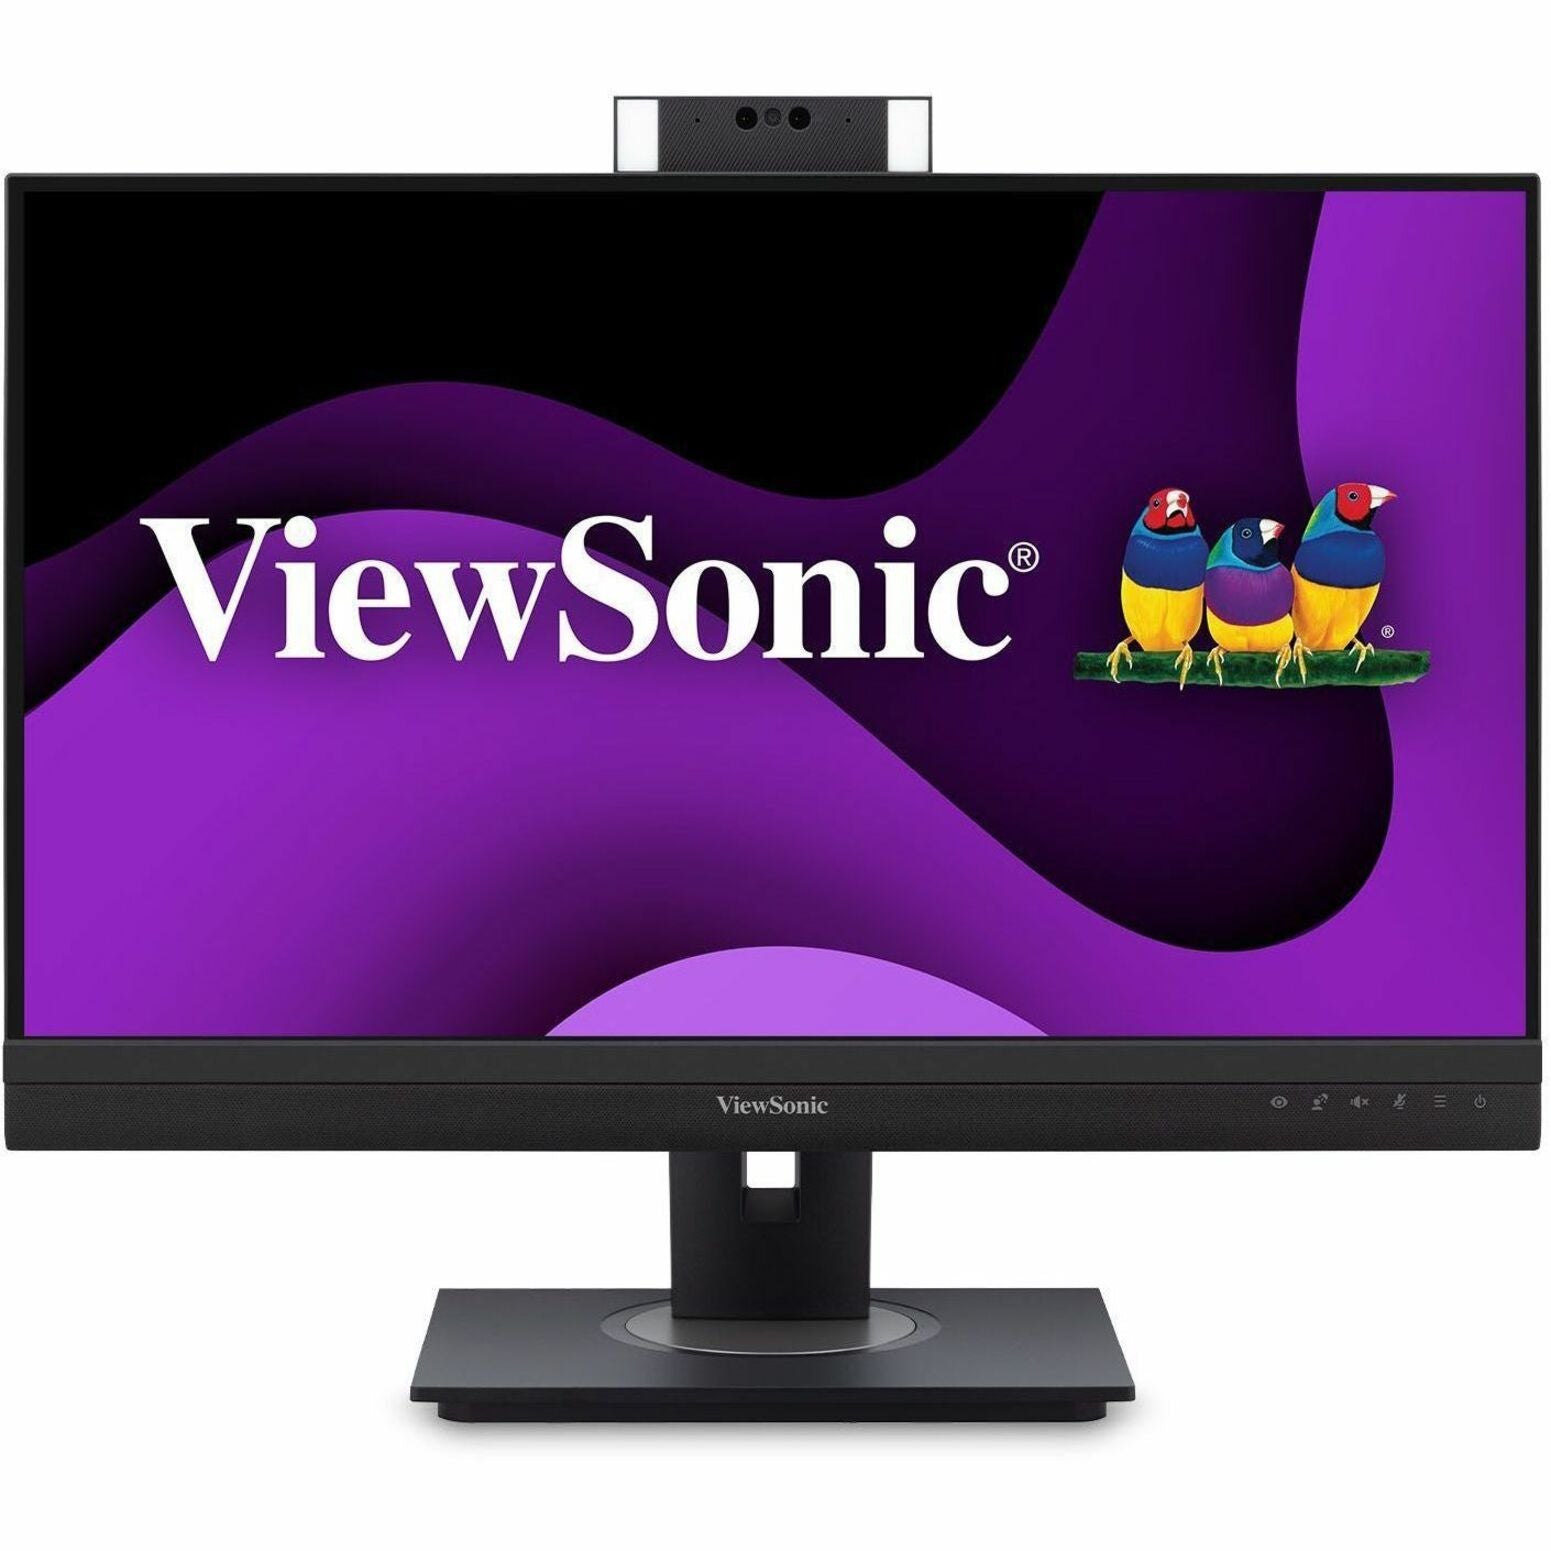 ViewSonic 27PO 1440P MONITEUR DE VISIOCONFÉRENCE AVEC WEBCAM IR COMPATIBLE WINDOWS HELLO 9 (VG2757V-2K)